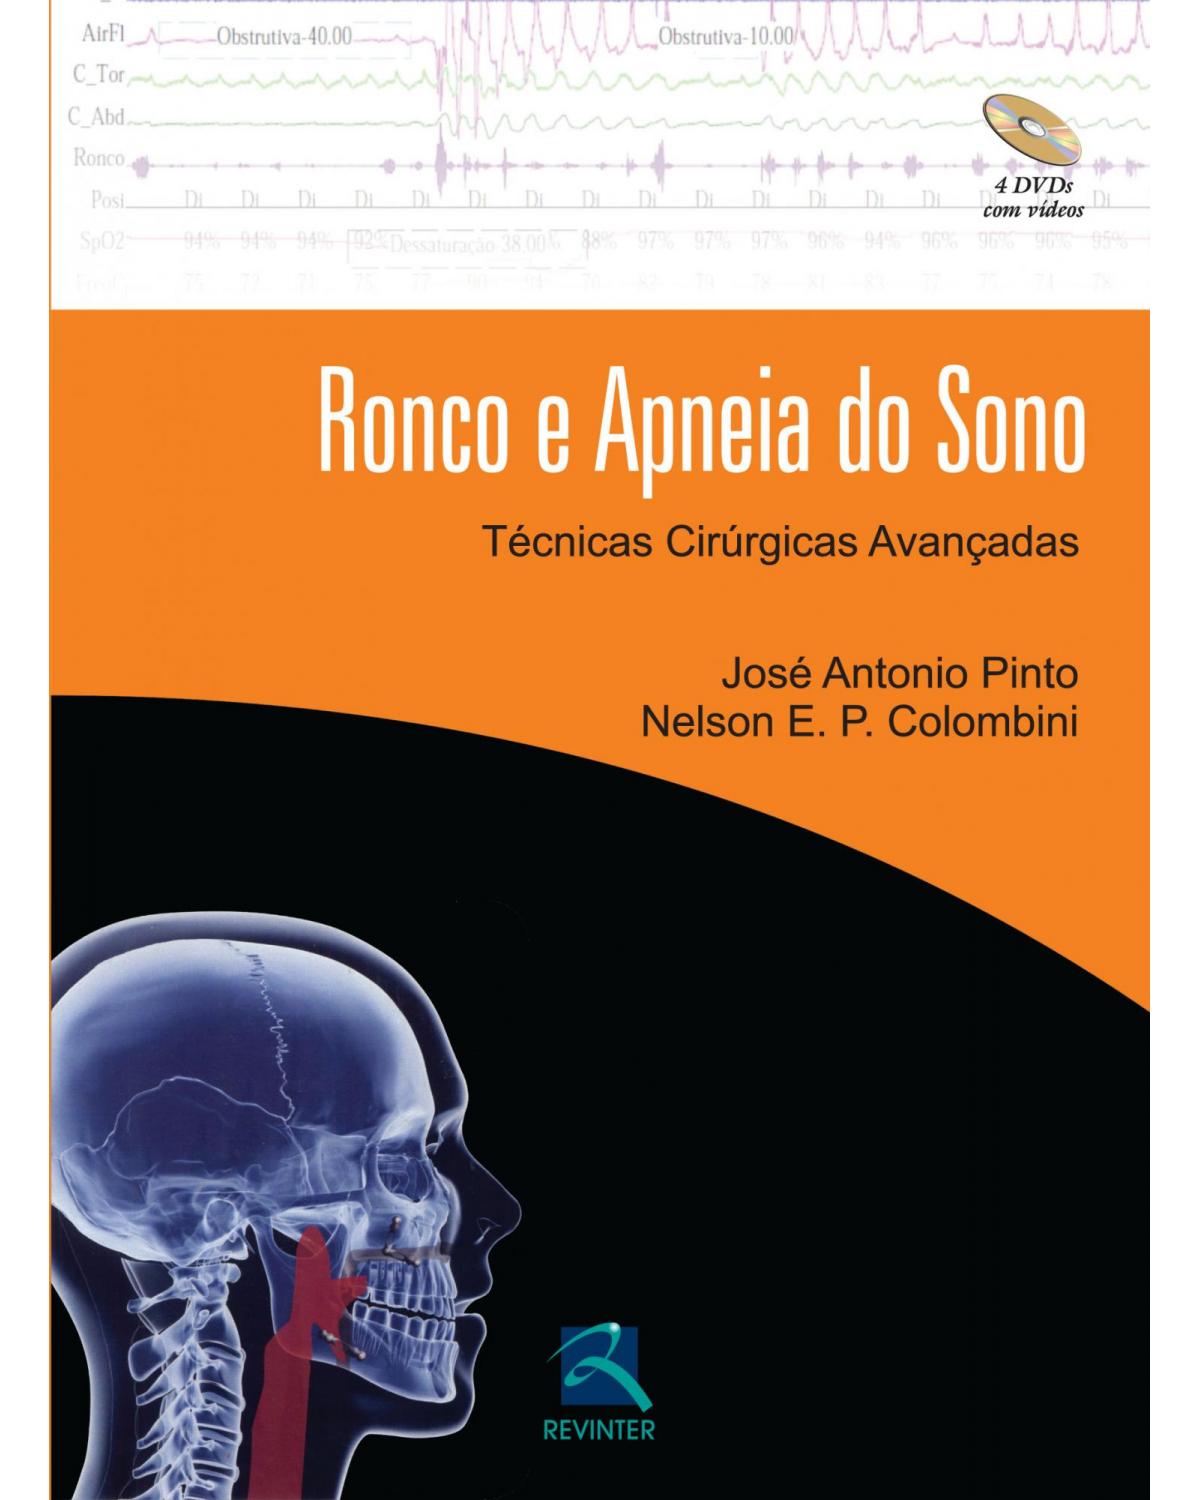 Ronco e apneia do sono - técnicas cirúrgicas avançadas - 1ª Edição | 2014